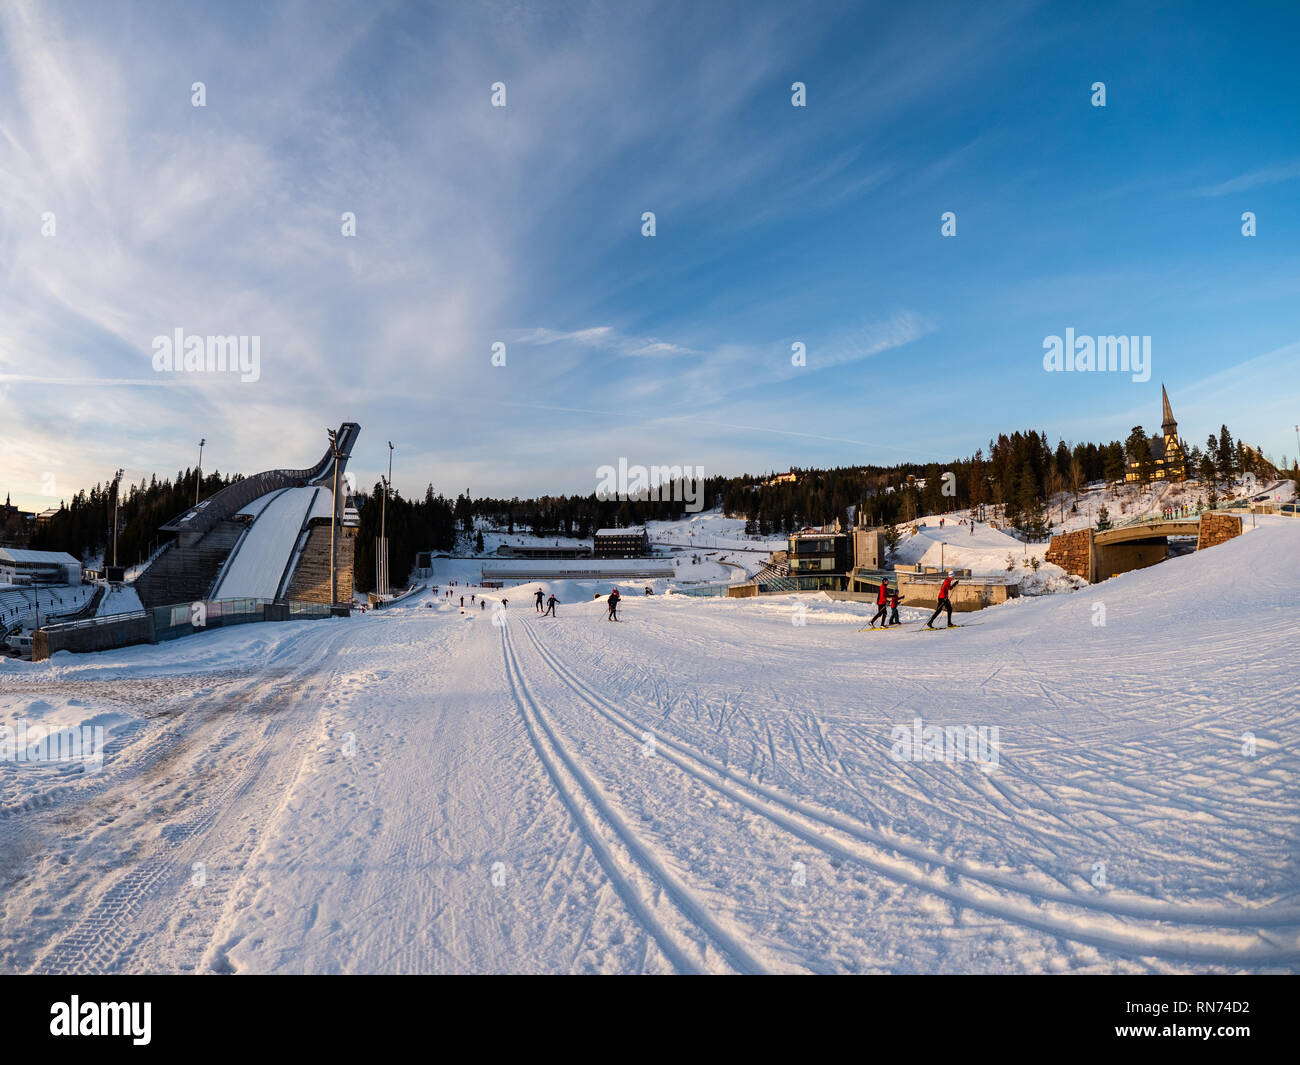 Des pistes de ski de fond au saut à ski Holmenkollen, le fameux ski arena d'Oslo. Banque D'Images